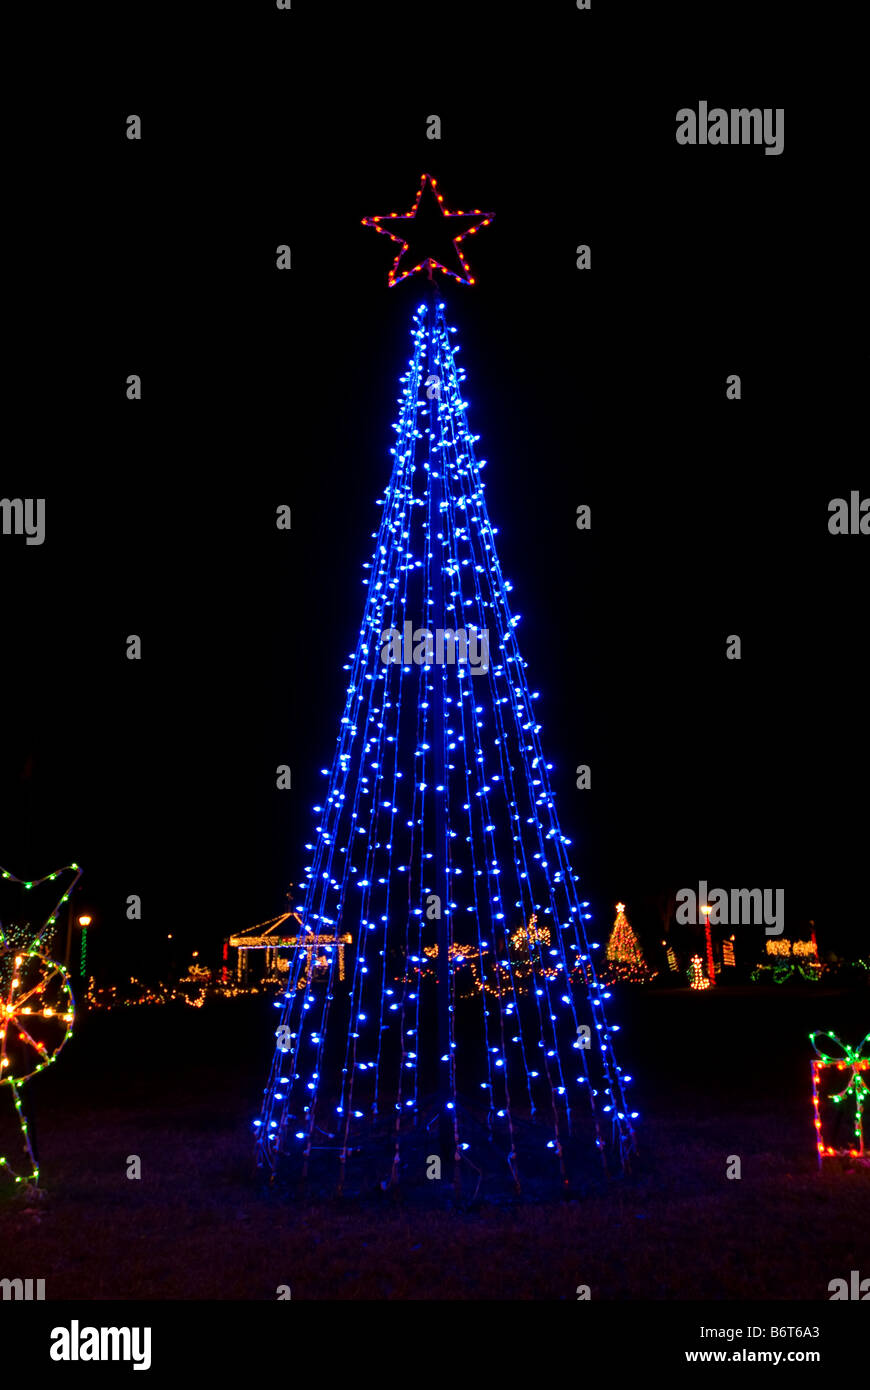 Weihnachtsbaum helles Blau Farbe Lichter Nacht dunkler Hintergrund Weihnachtsschmuck Dekor dunklen Hintergrund Stockfoto